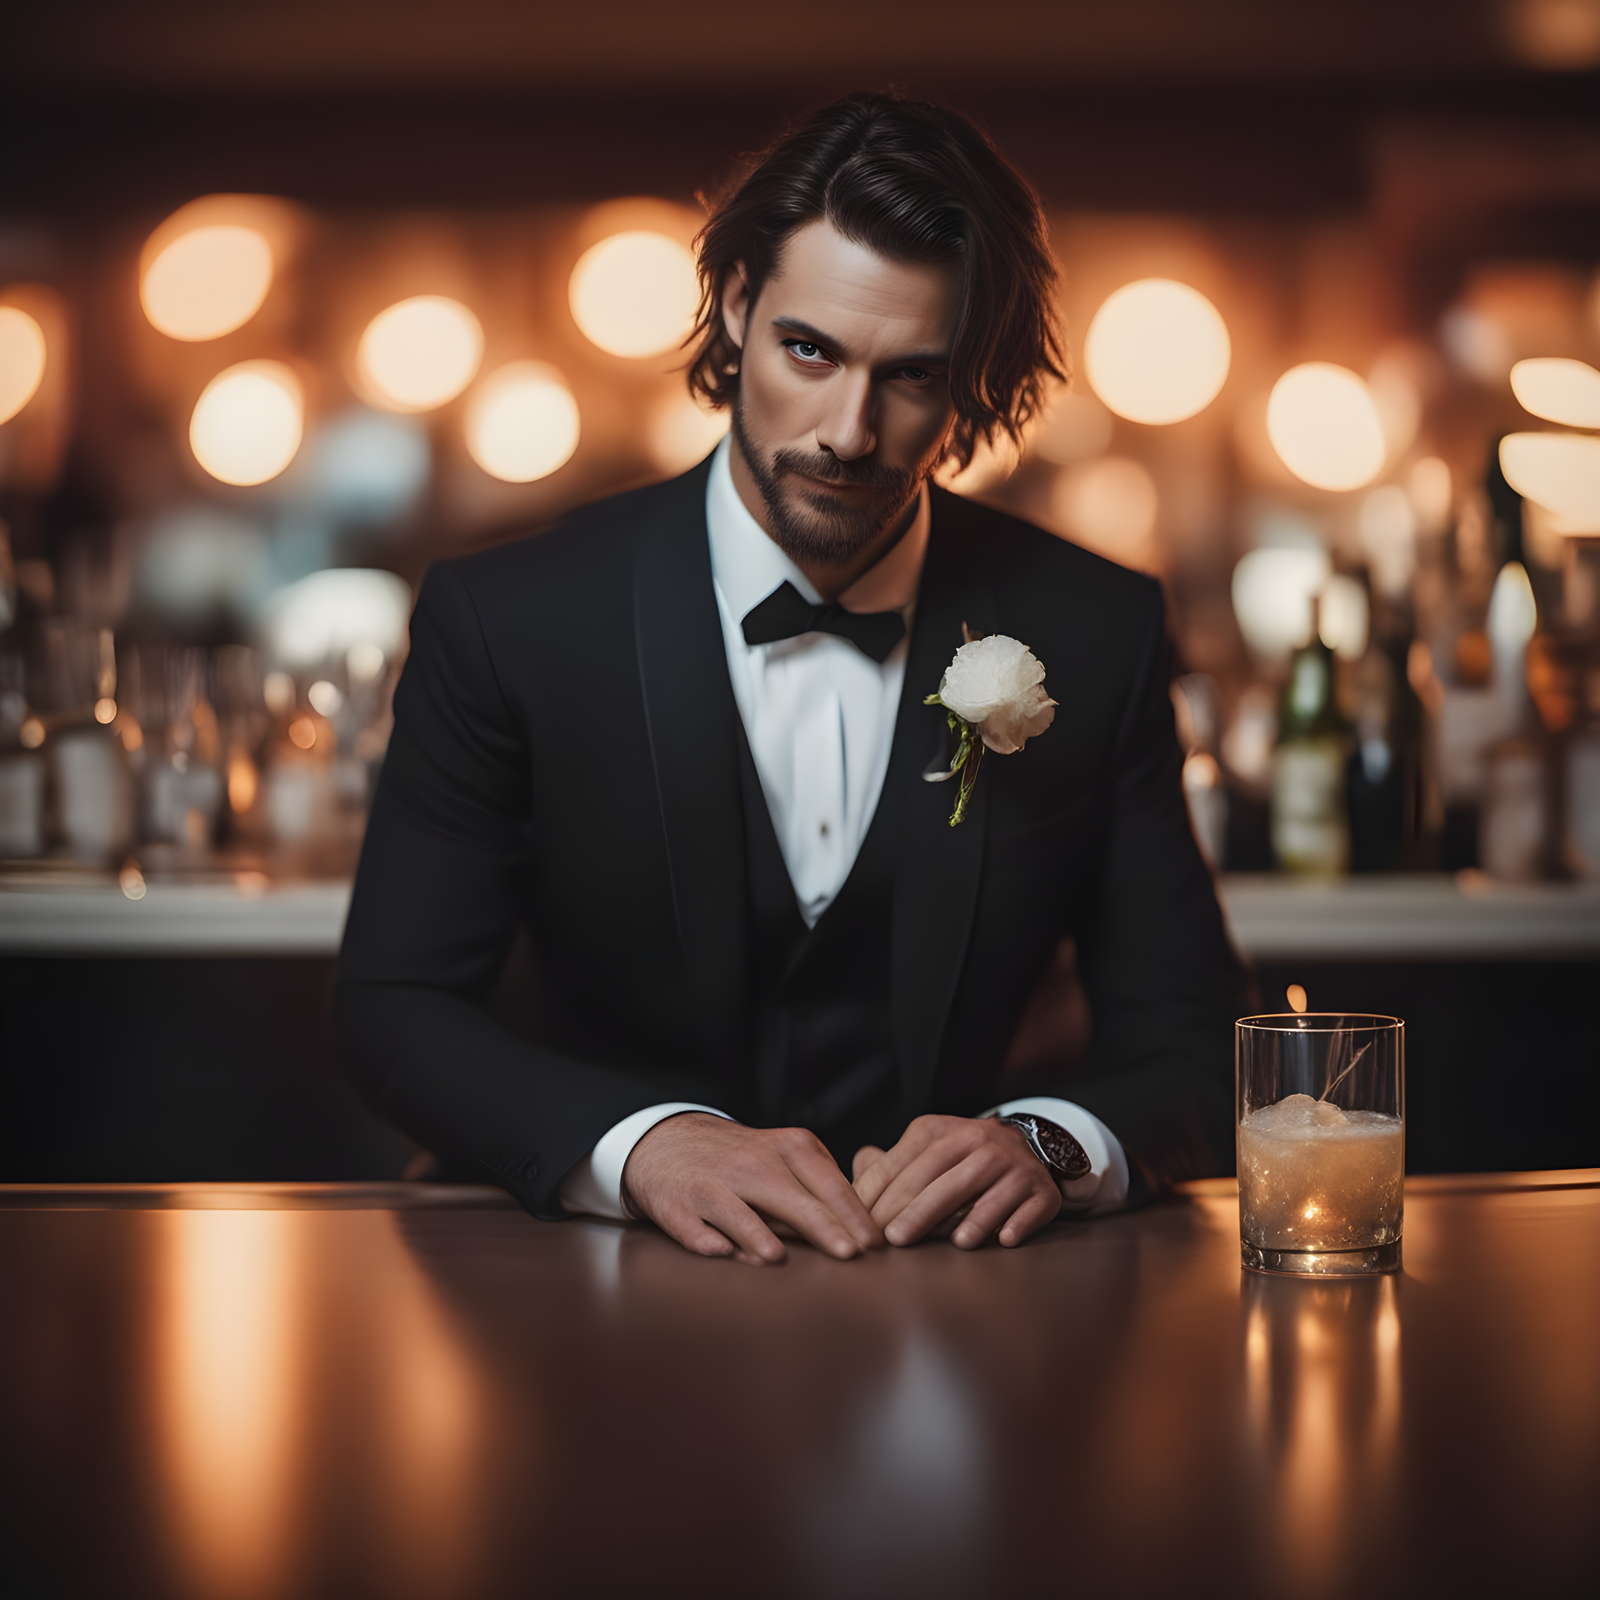 Hyr en Bartender för Bröllopet: Skapa en Oförglömlig Dryckesupplevelse